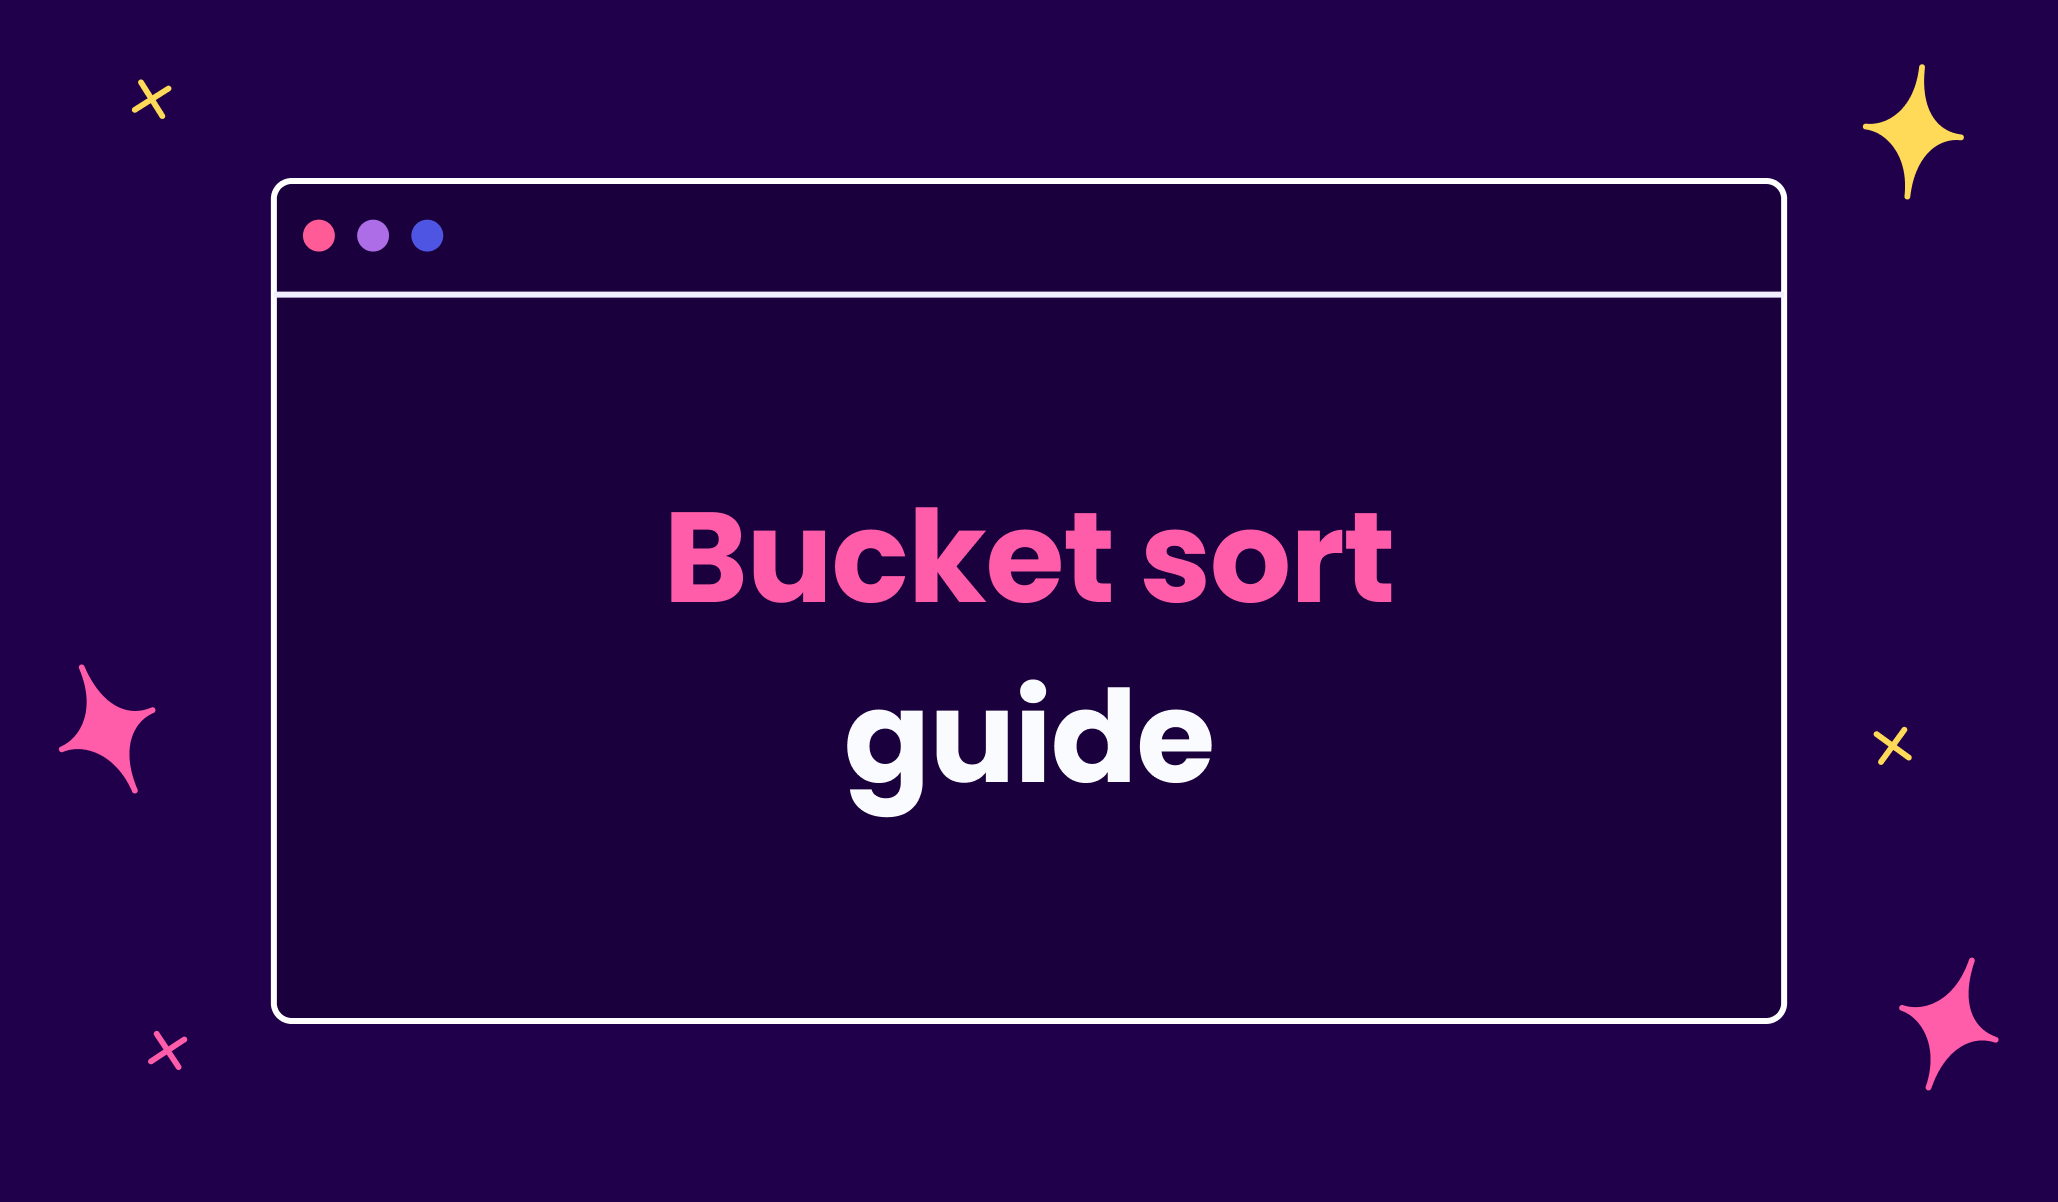 A practical guide to understanding bucket sort